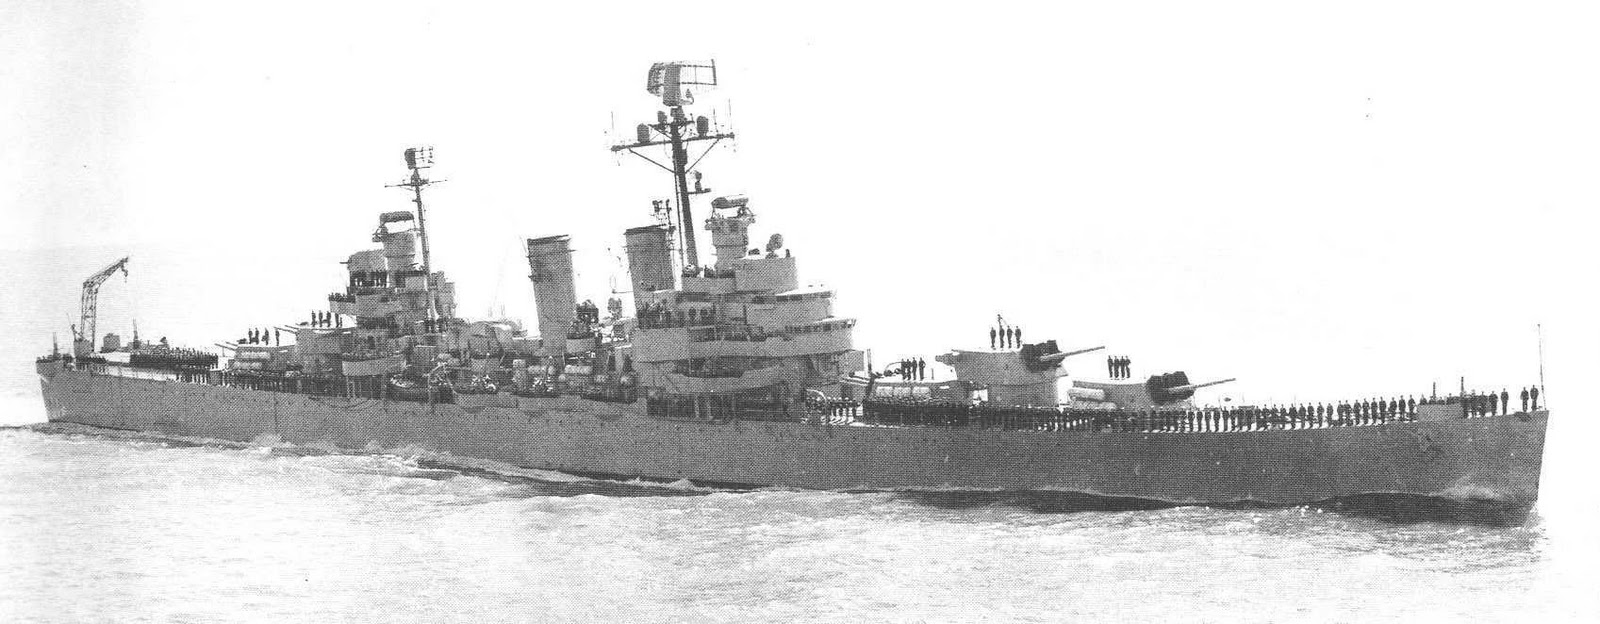 1 maja 1982 r. Conqueror wykrył argentyński zespół nawodny skupiony wokół zwodowanego w marcu 1938 r. krążownika ARA General Belgrano (C-4), ex-amerykańskiego USS Phoenix (CL-46.). Nieprzyjacielskie okręty zostały zidentyfikowane przez peryskop. Przez kolejne 30 godzin trwała zabawa w kotka i myszkę. Conqueror śledził argentyńskie okręty operujące na granicy strefy działań wojennych. Źródła: wikimedia.org i taringa.net